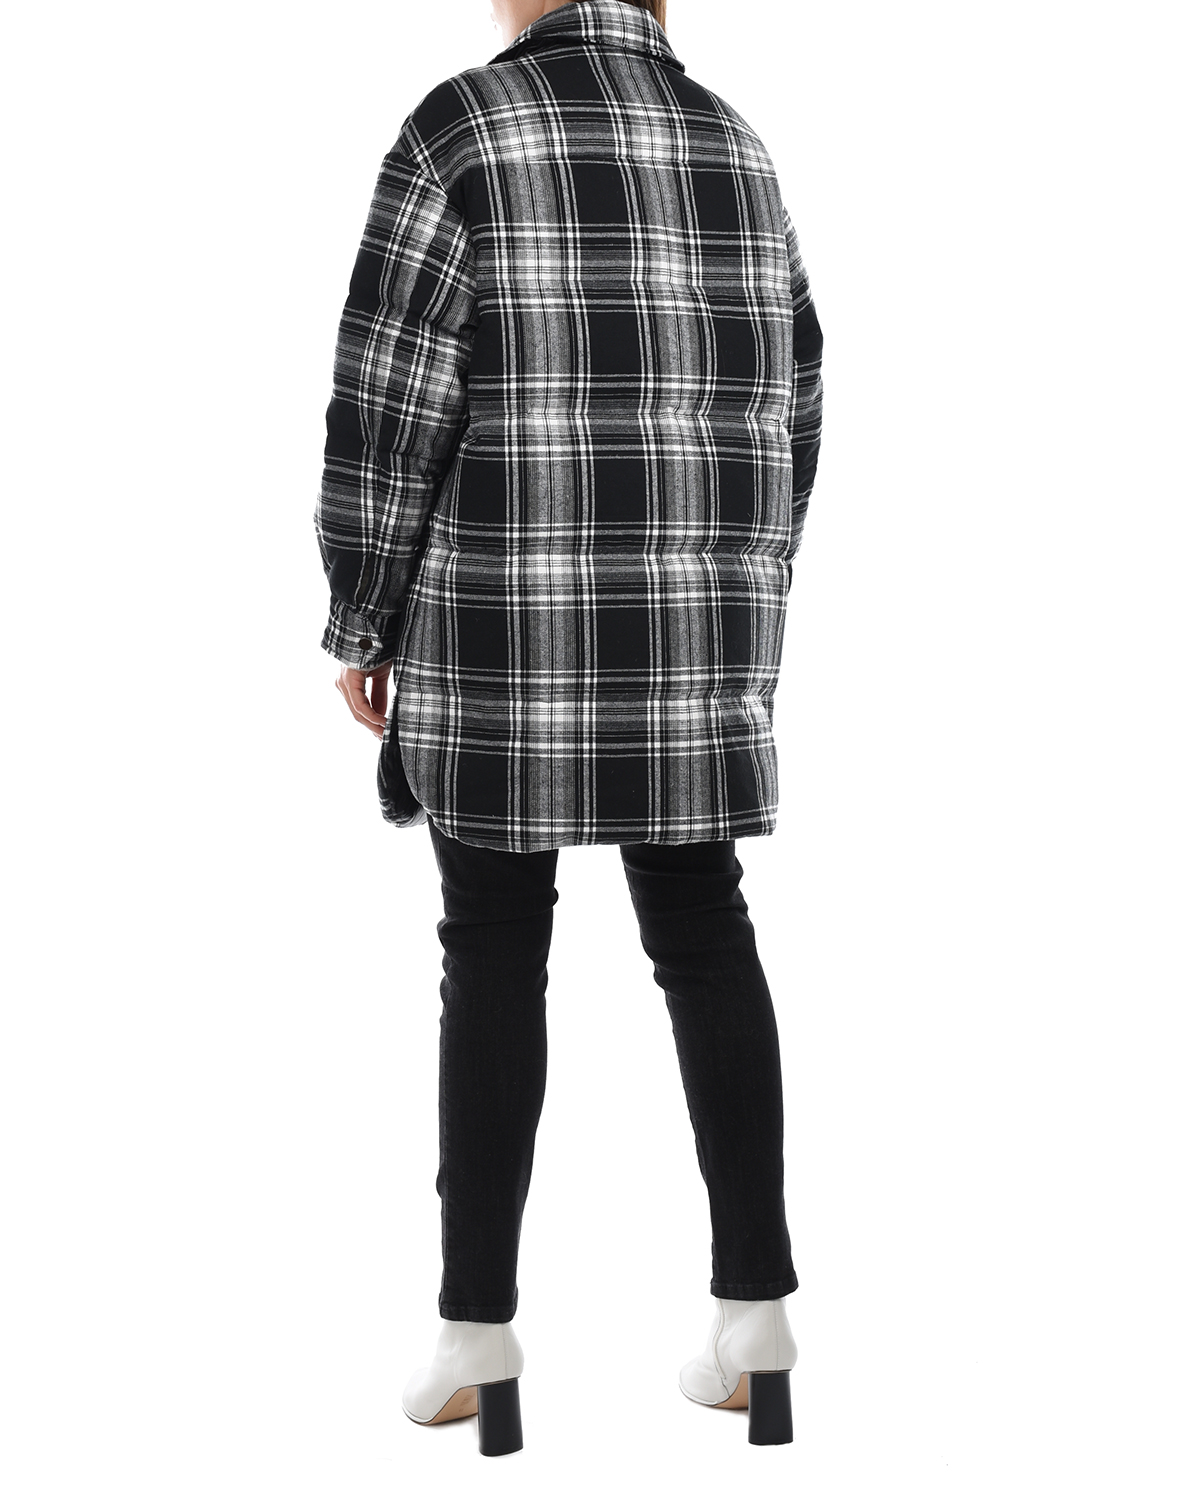 Пальто имитирующее рубашку в клетку Parosh, размер 42, цвет черный - фото 4